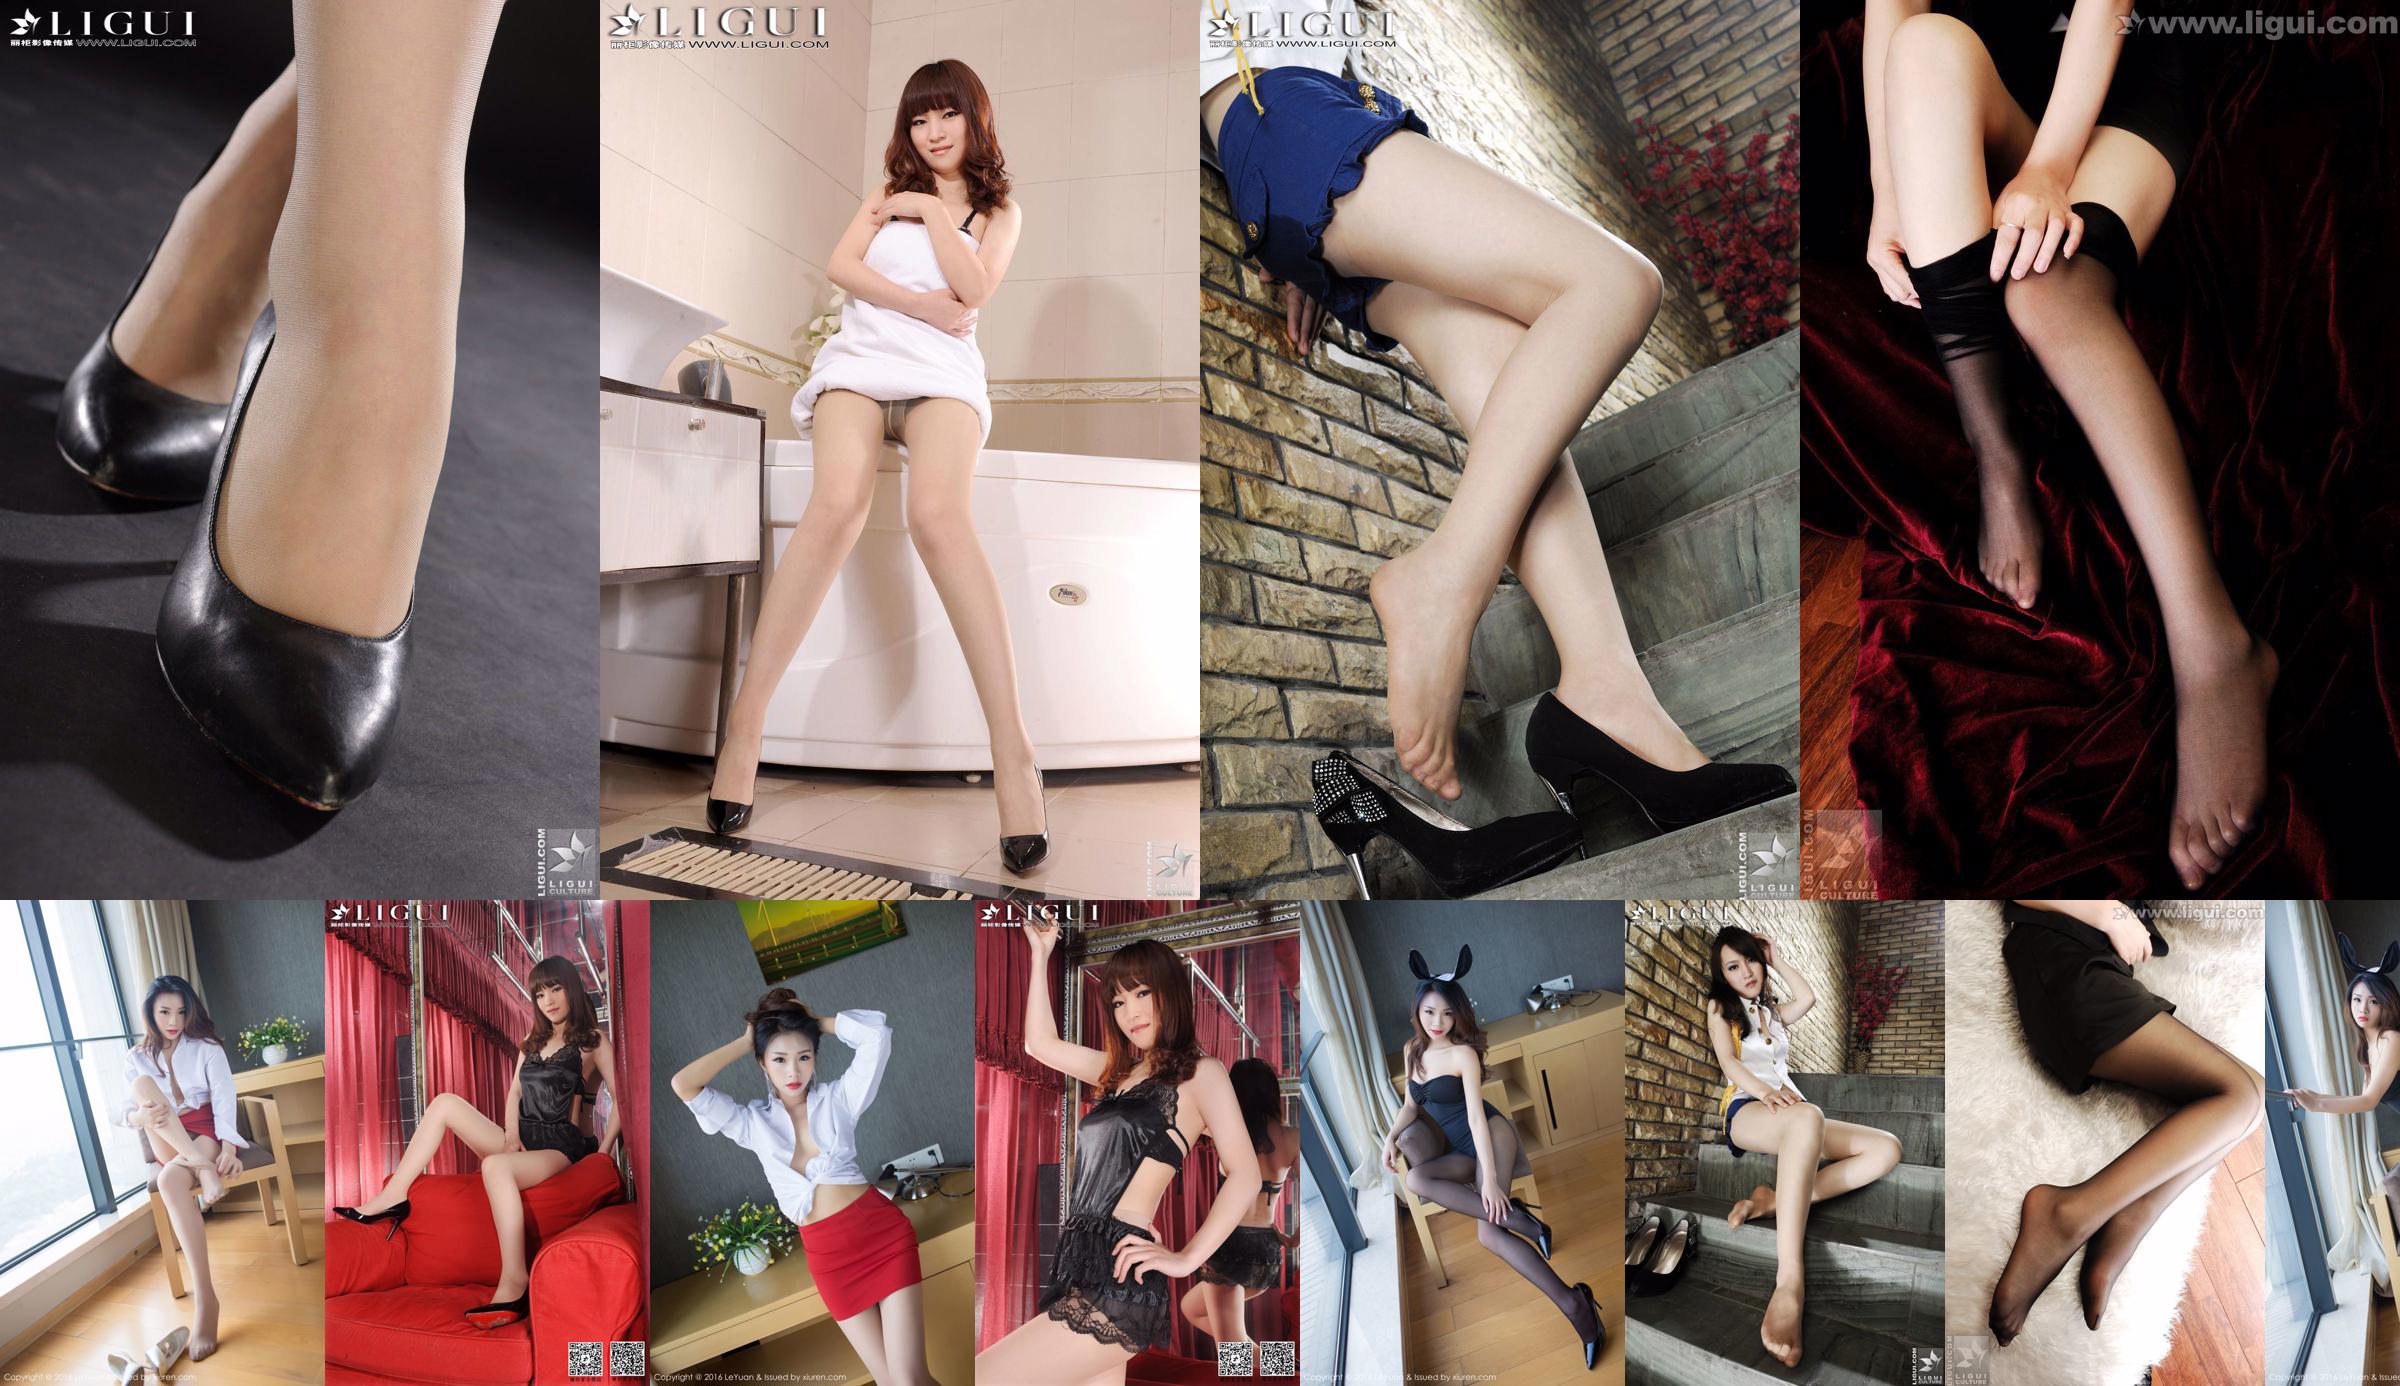 Modello Tina "Indoor Charming Stunner" [丽 柜 LiGui] Foto di belle gambe e piedi di giada No.1063b1 Pagina 1